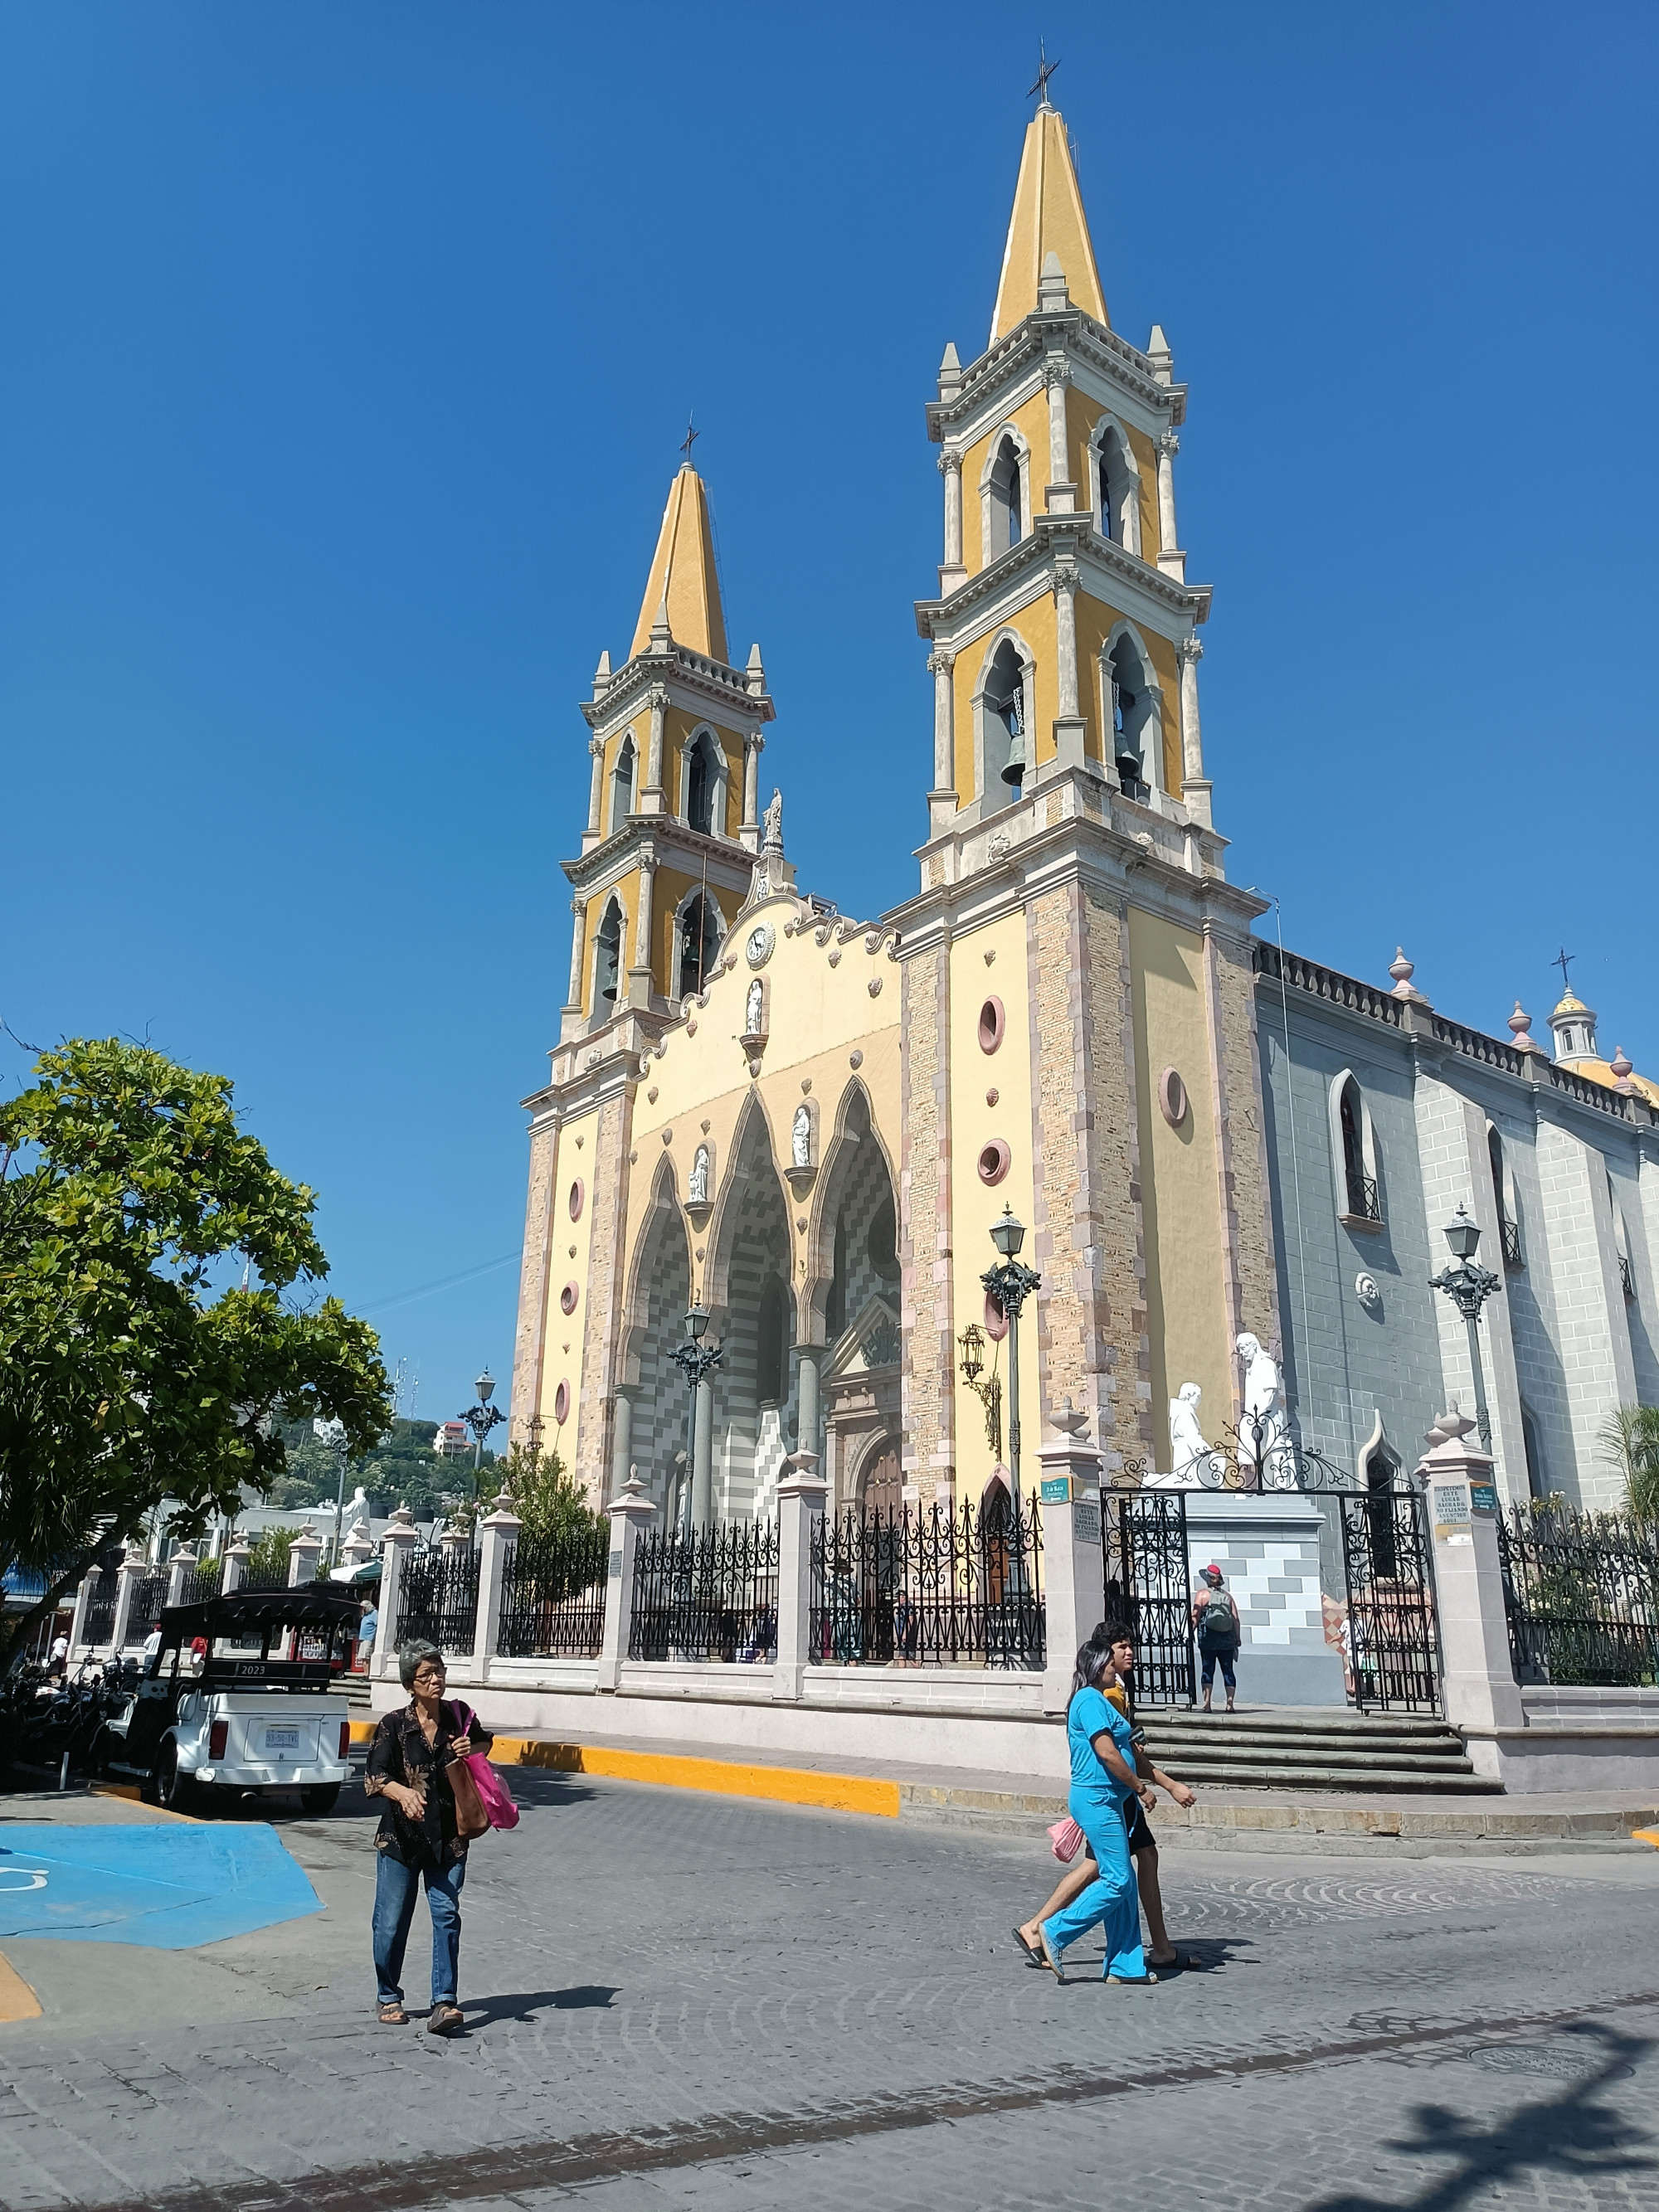 Catedral Basílica de la Inmaculada Concepción